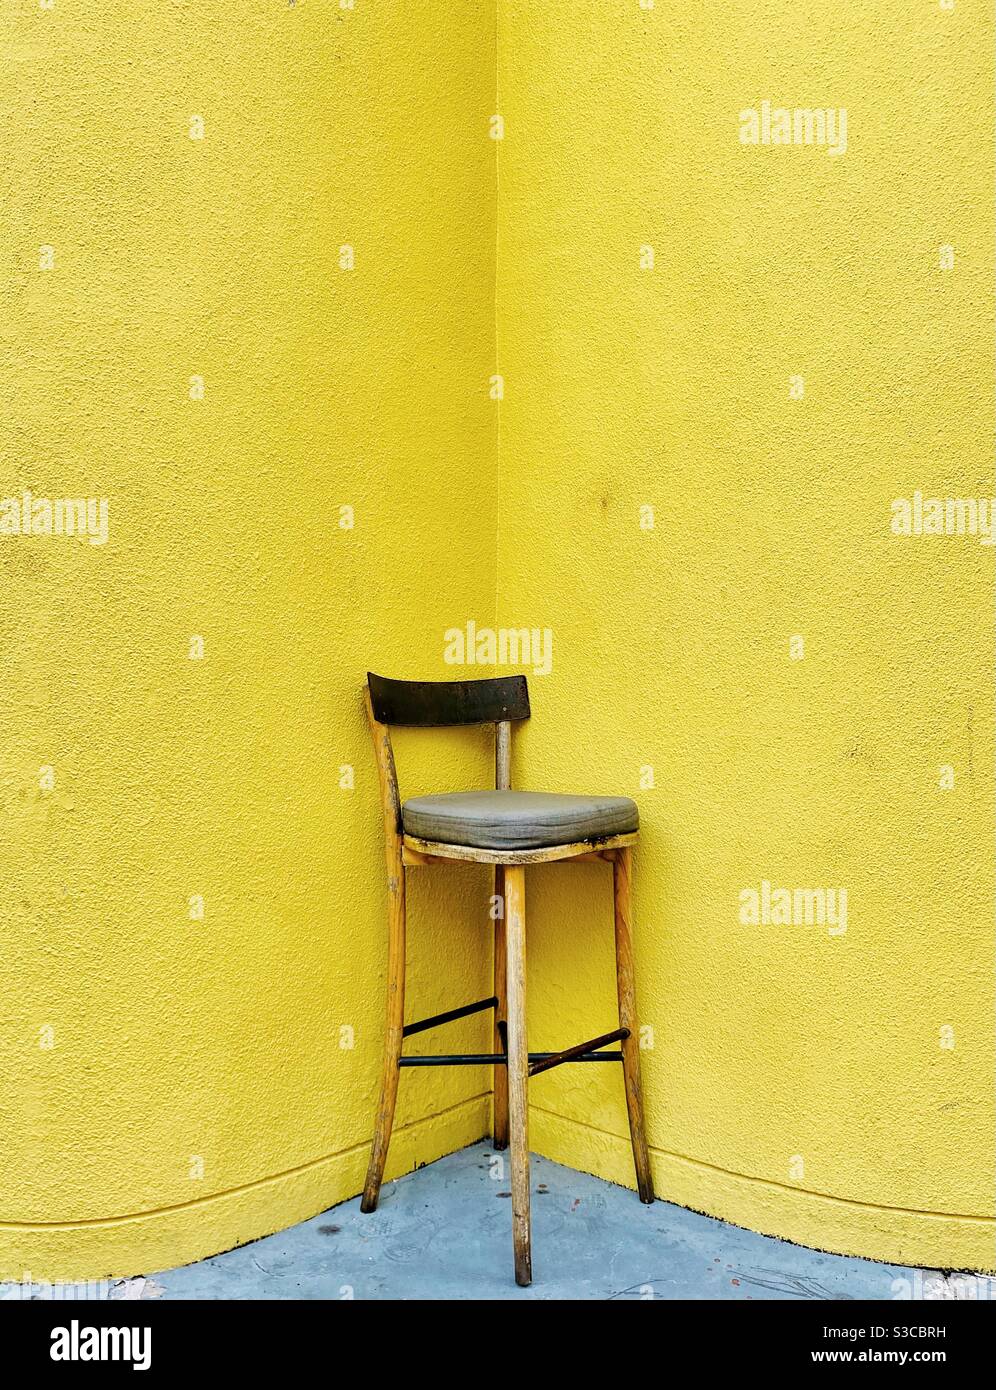 Este es literalmente un asiento de esquina, una silla en una esquina amarilla de un edificio Foto de stock